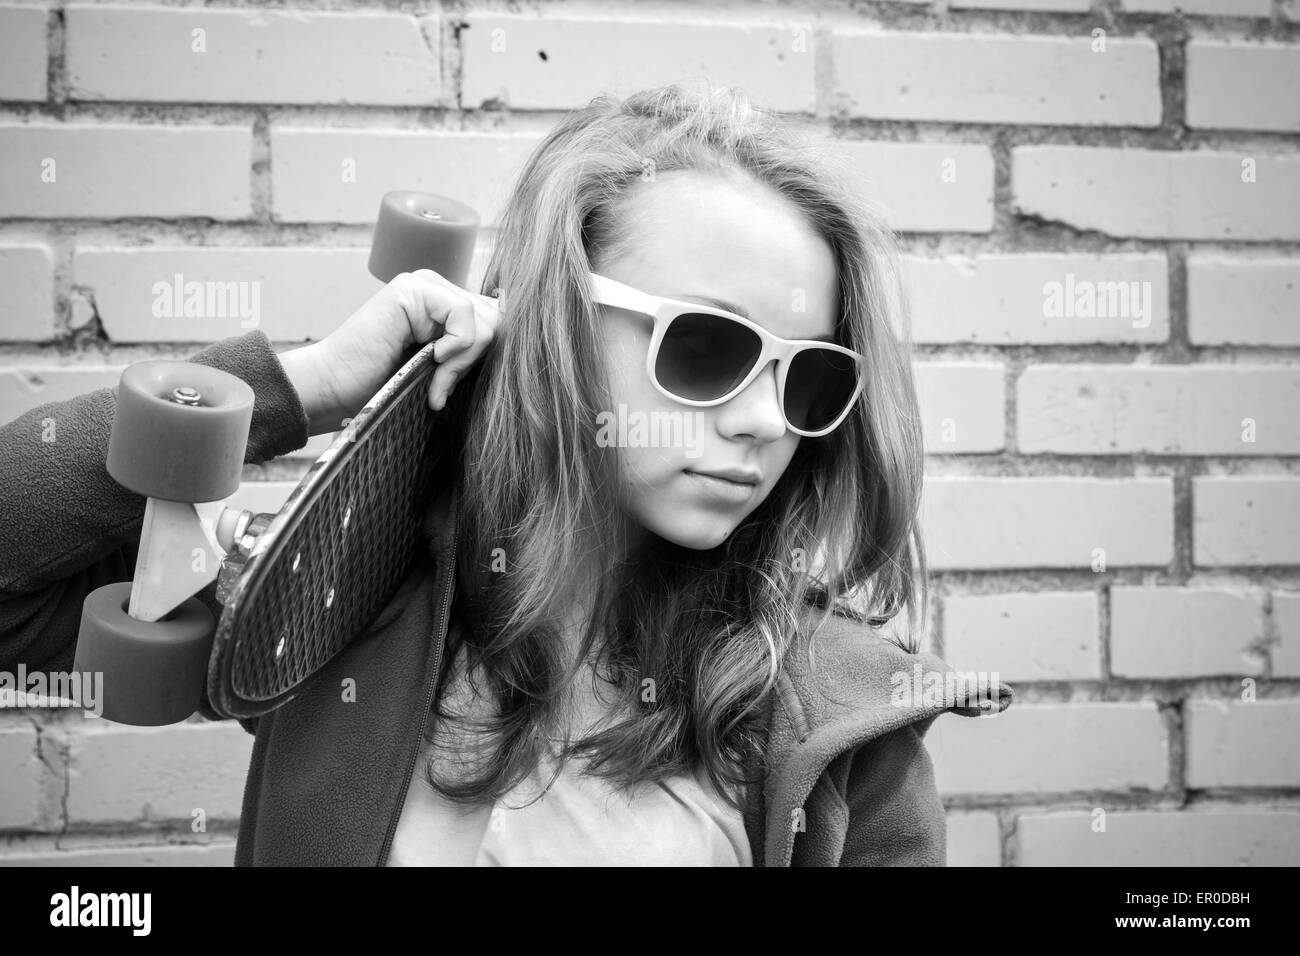 Adolescente blonde en jeans et lunettes détient plus de skateboard urban mur de briques, photo monochrome Banque D'Images